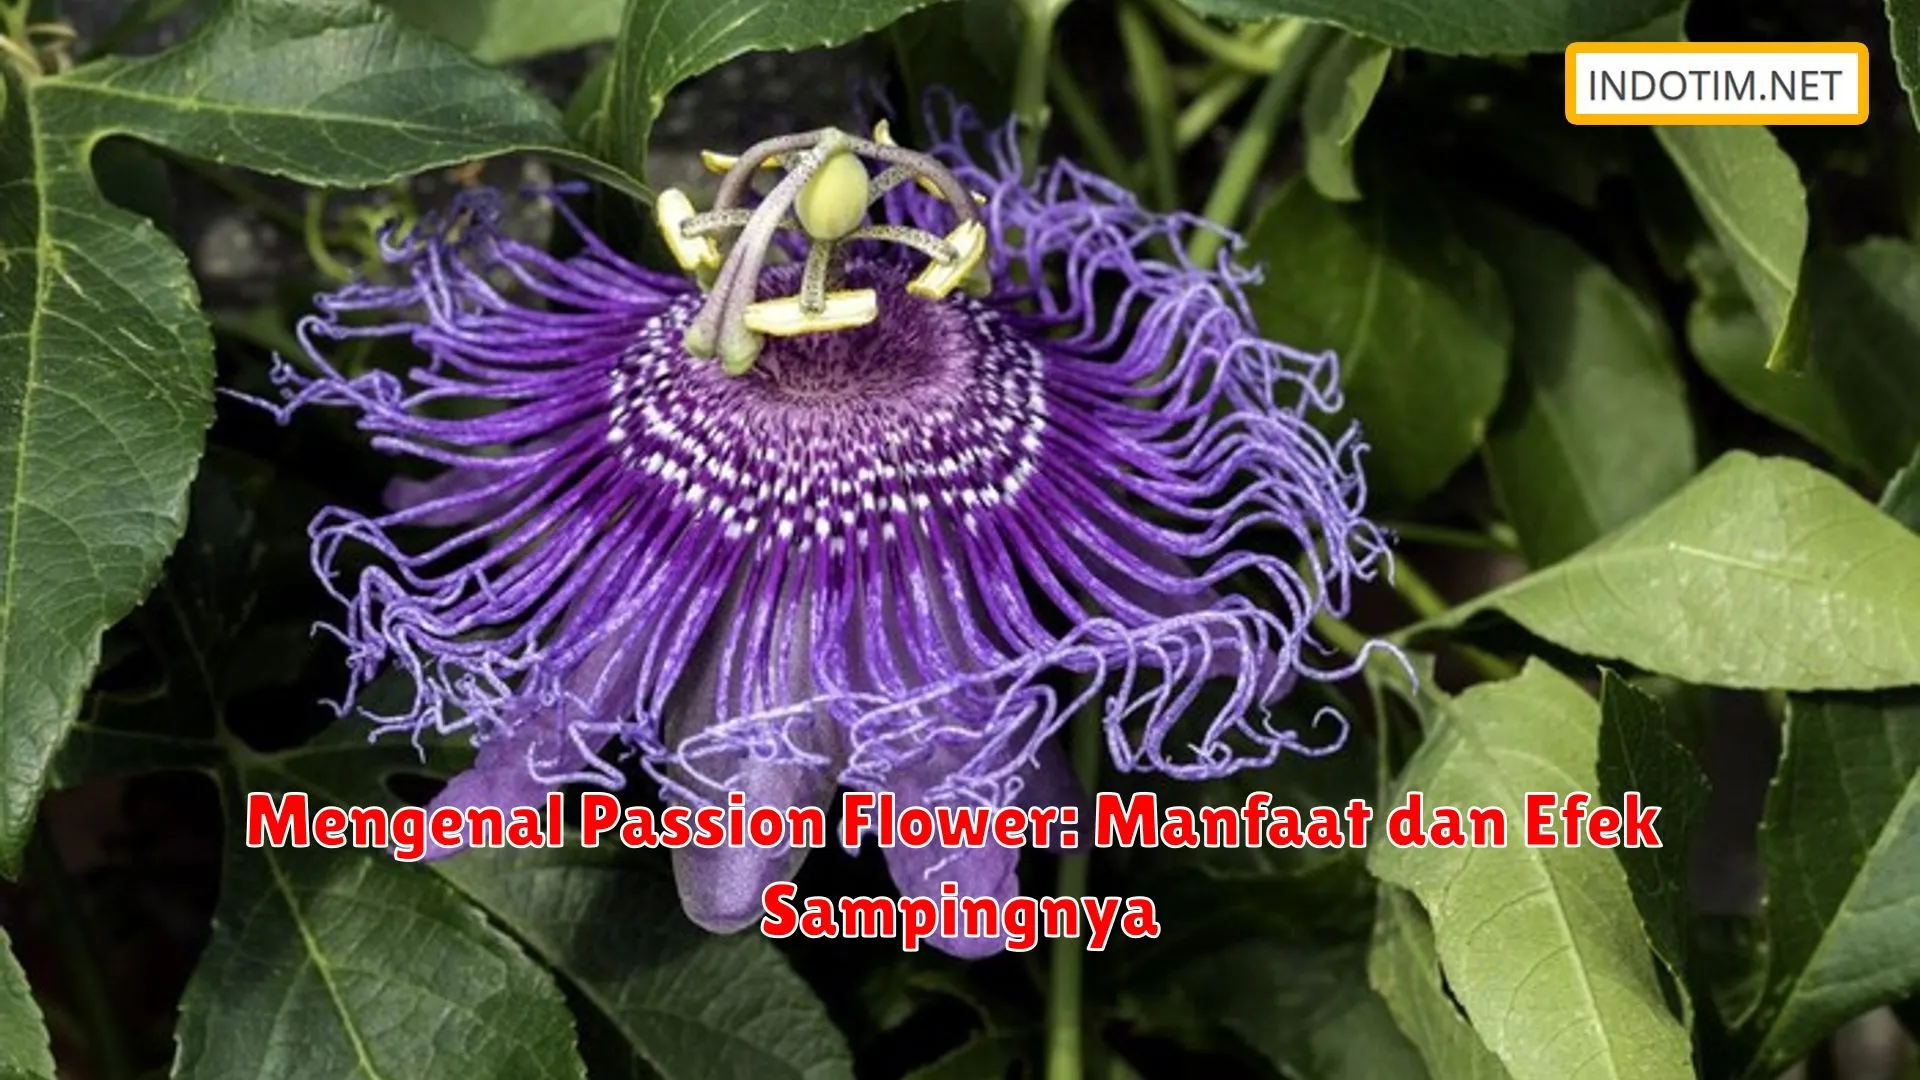 Mengenal Passion Flower: Manfaat dan Efek Sampingnya